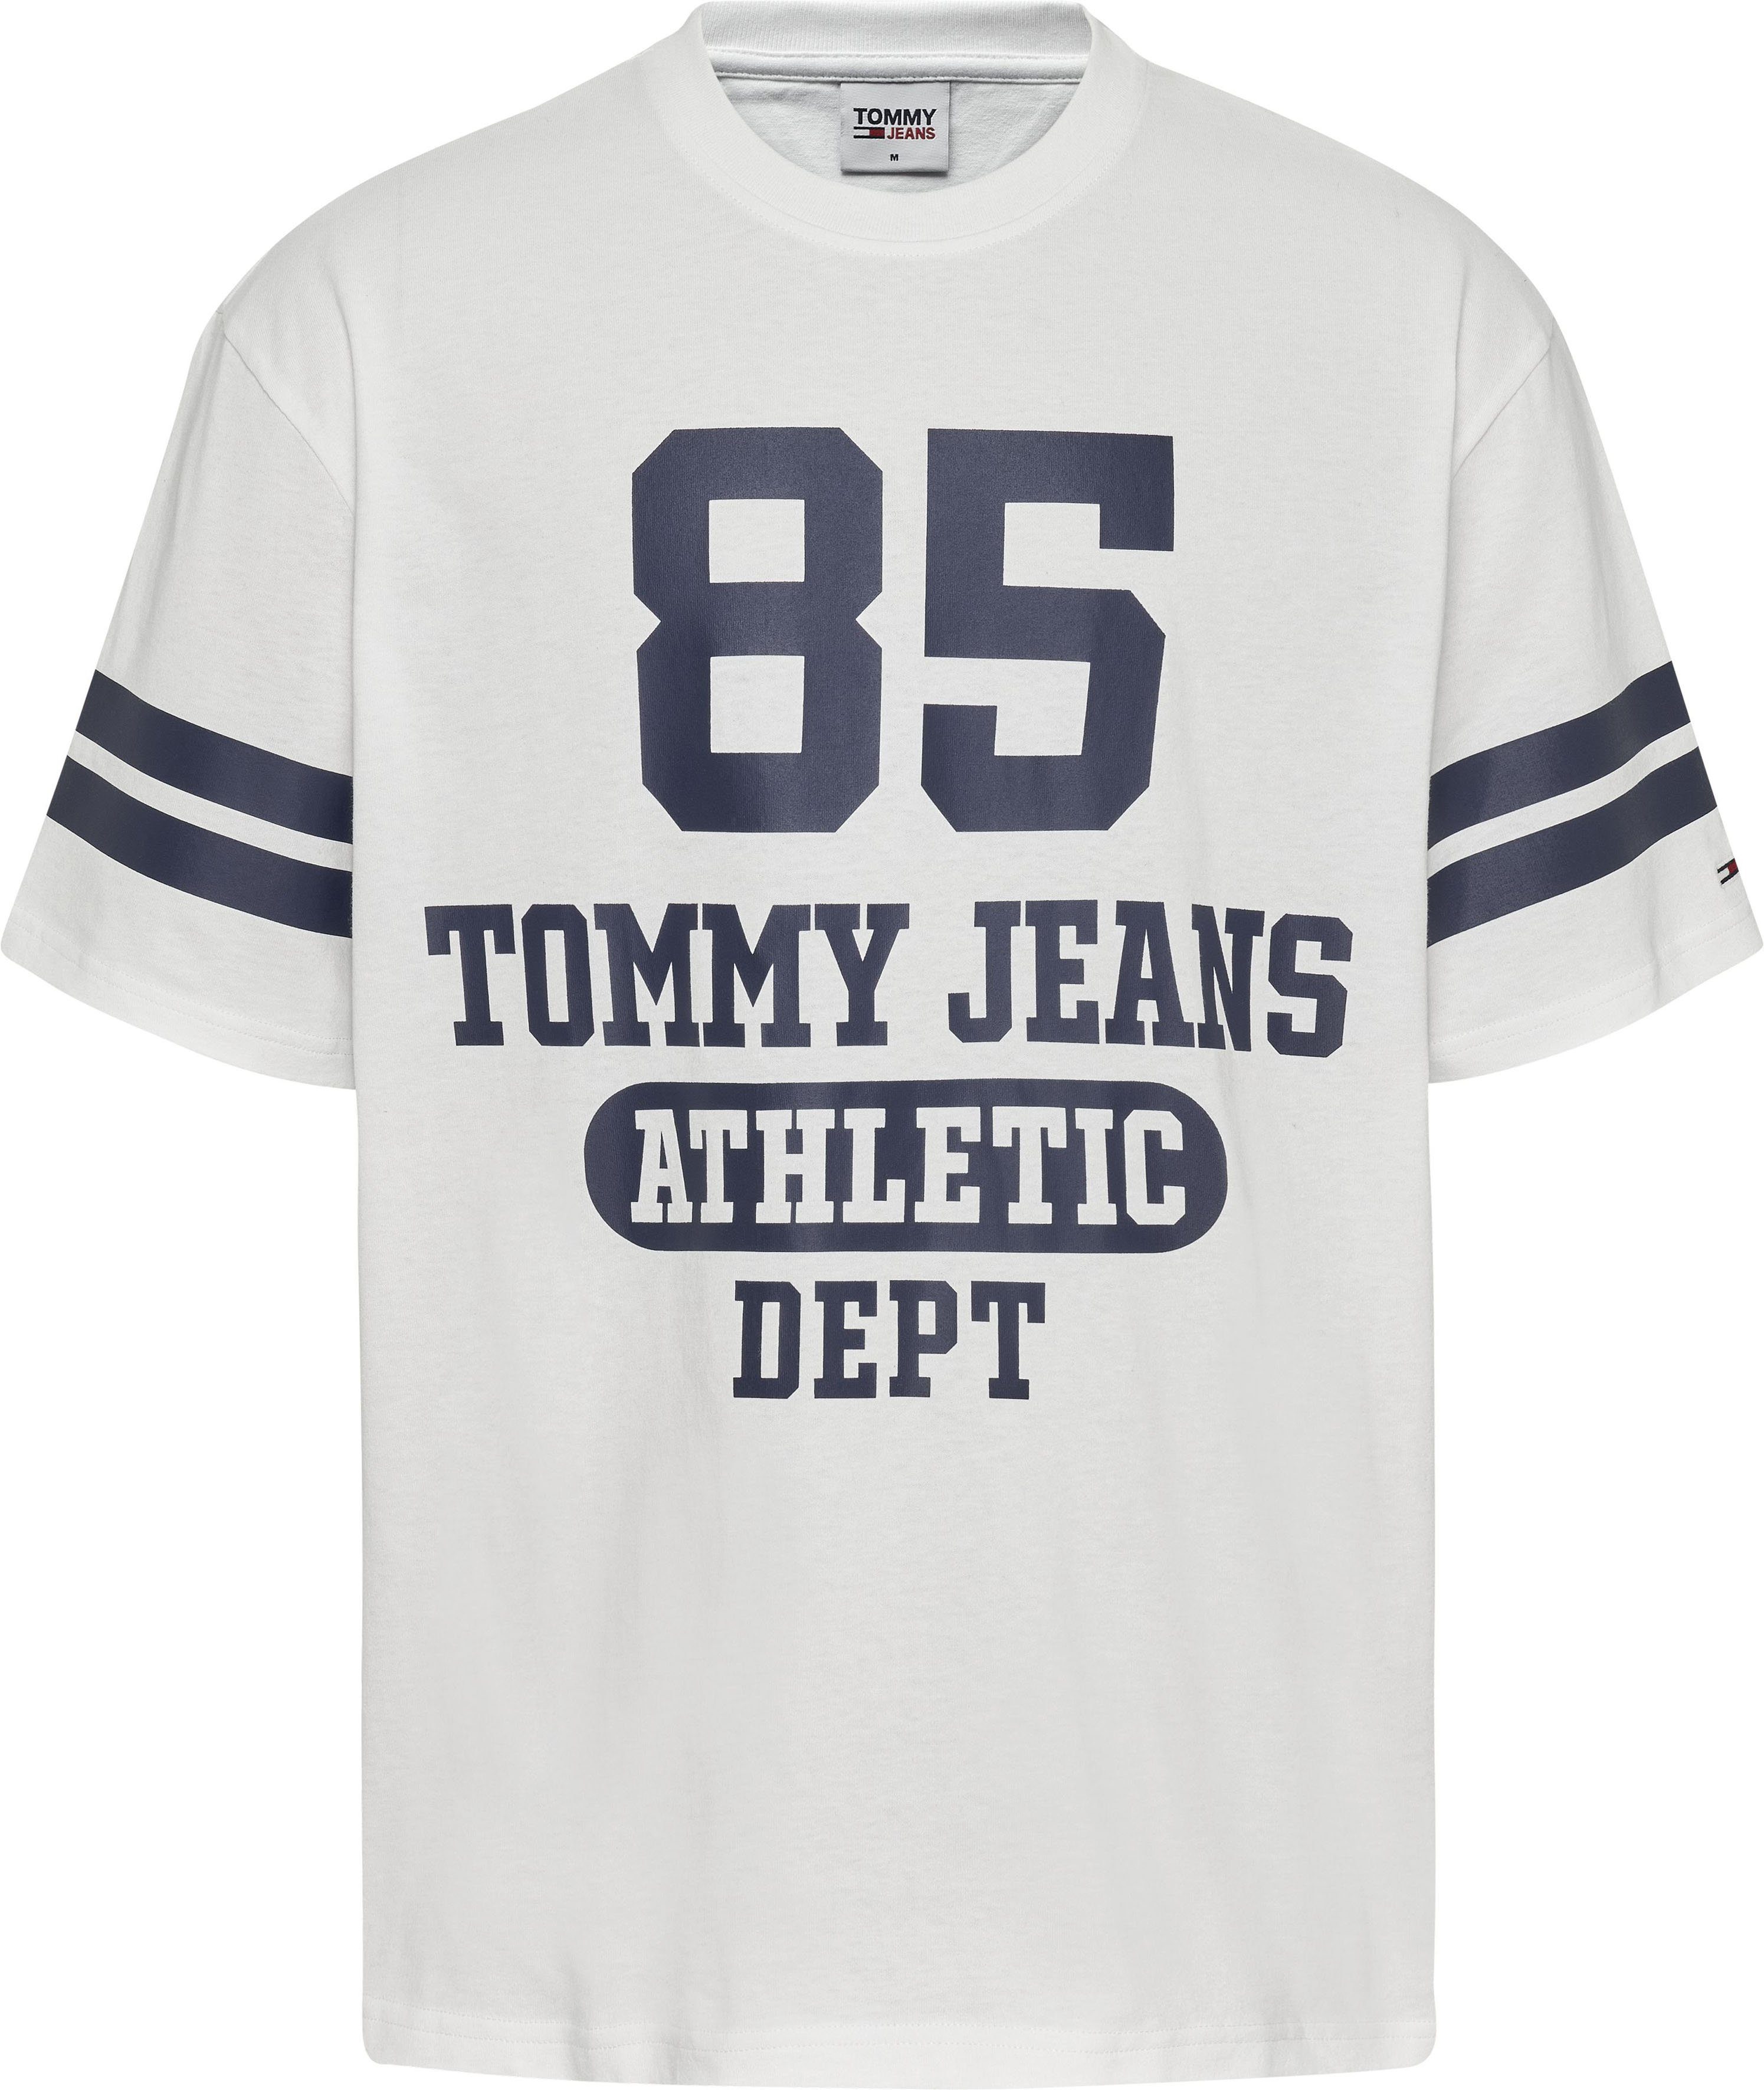 verkrijgbaar OTTO TJM T-shirt 85 COLLEGE JEANS LOGO TOMMY SKATER | online